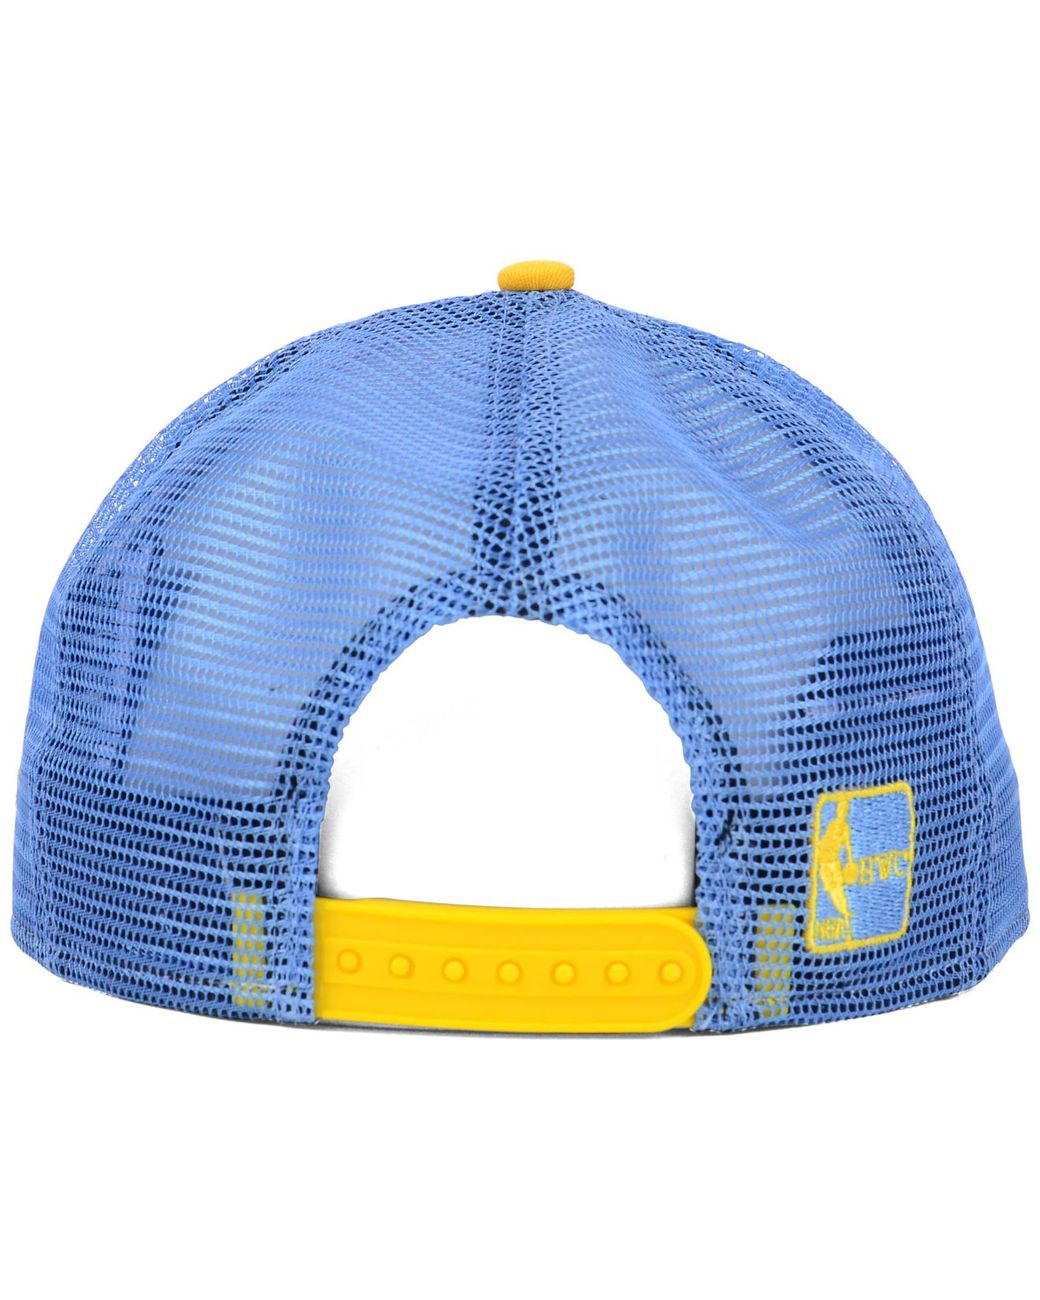 Pro Standard - Denver Nuggets Logo Snapback Hat – Shop VIP Wear